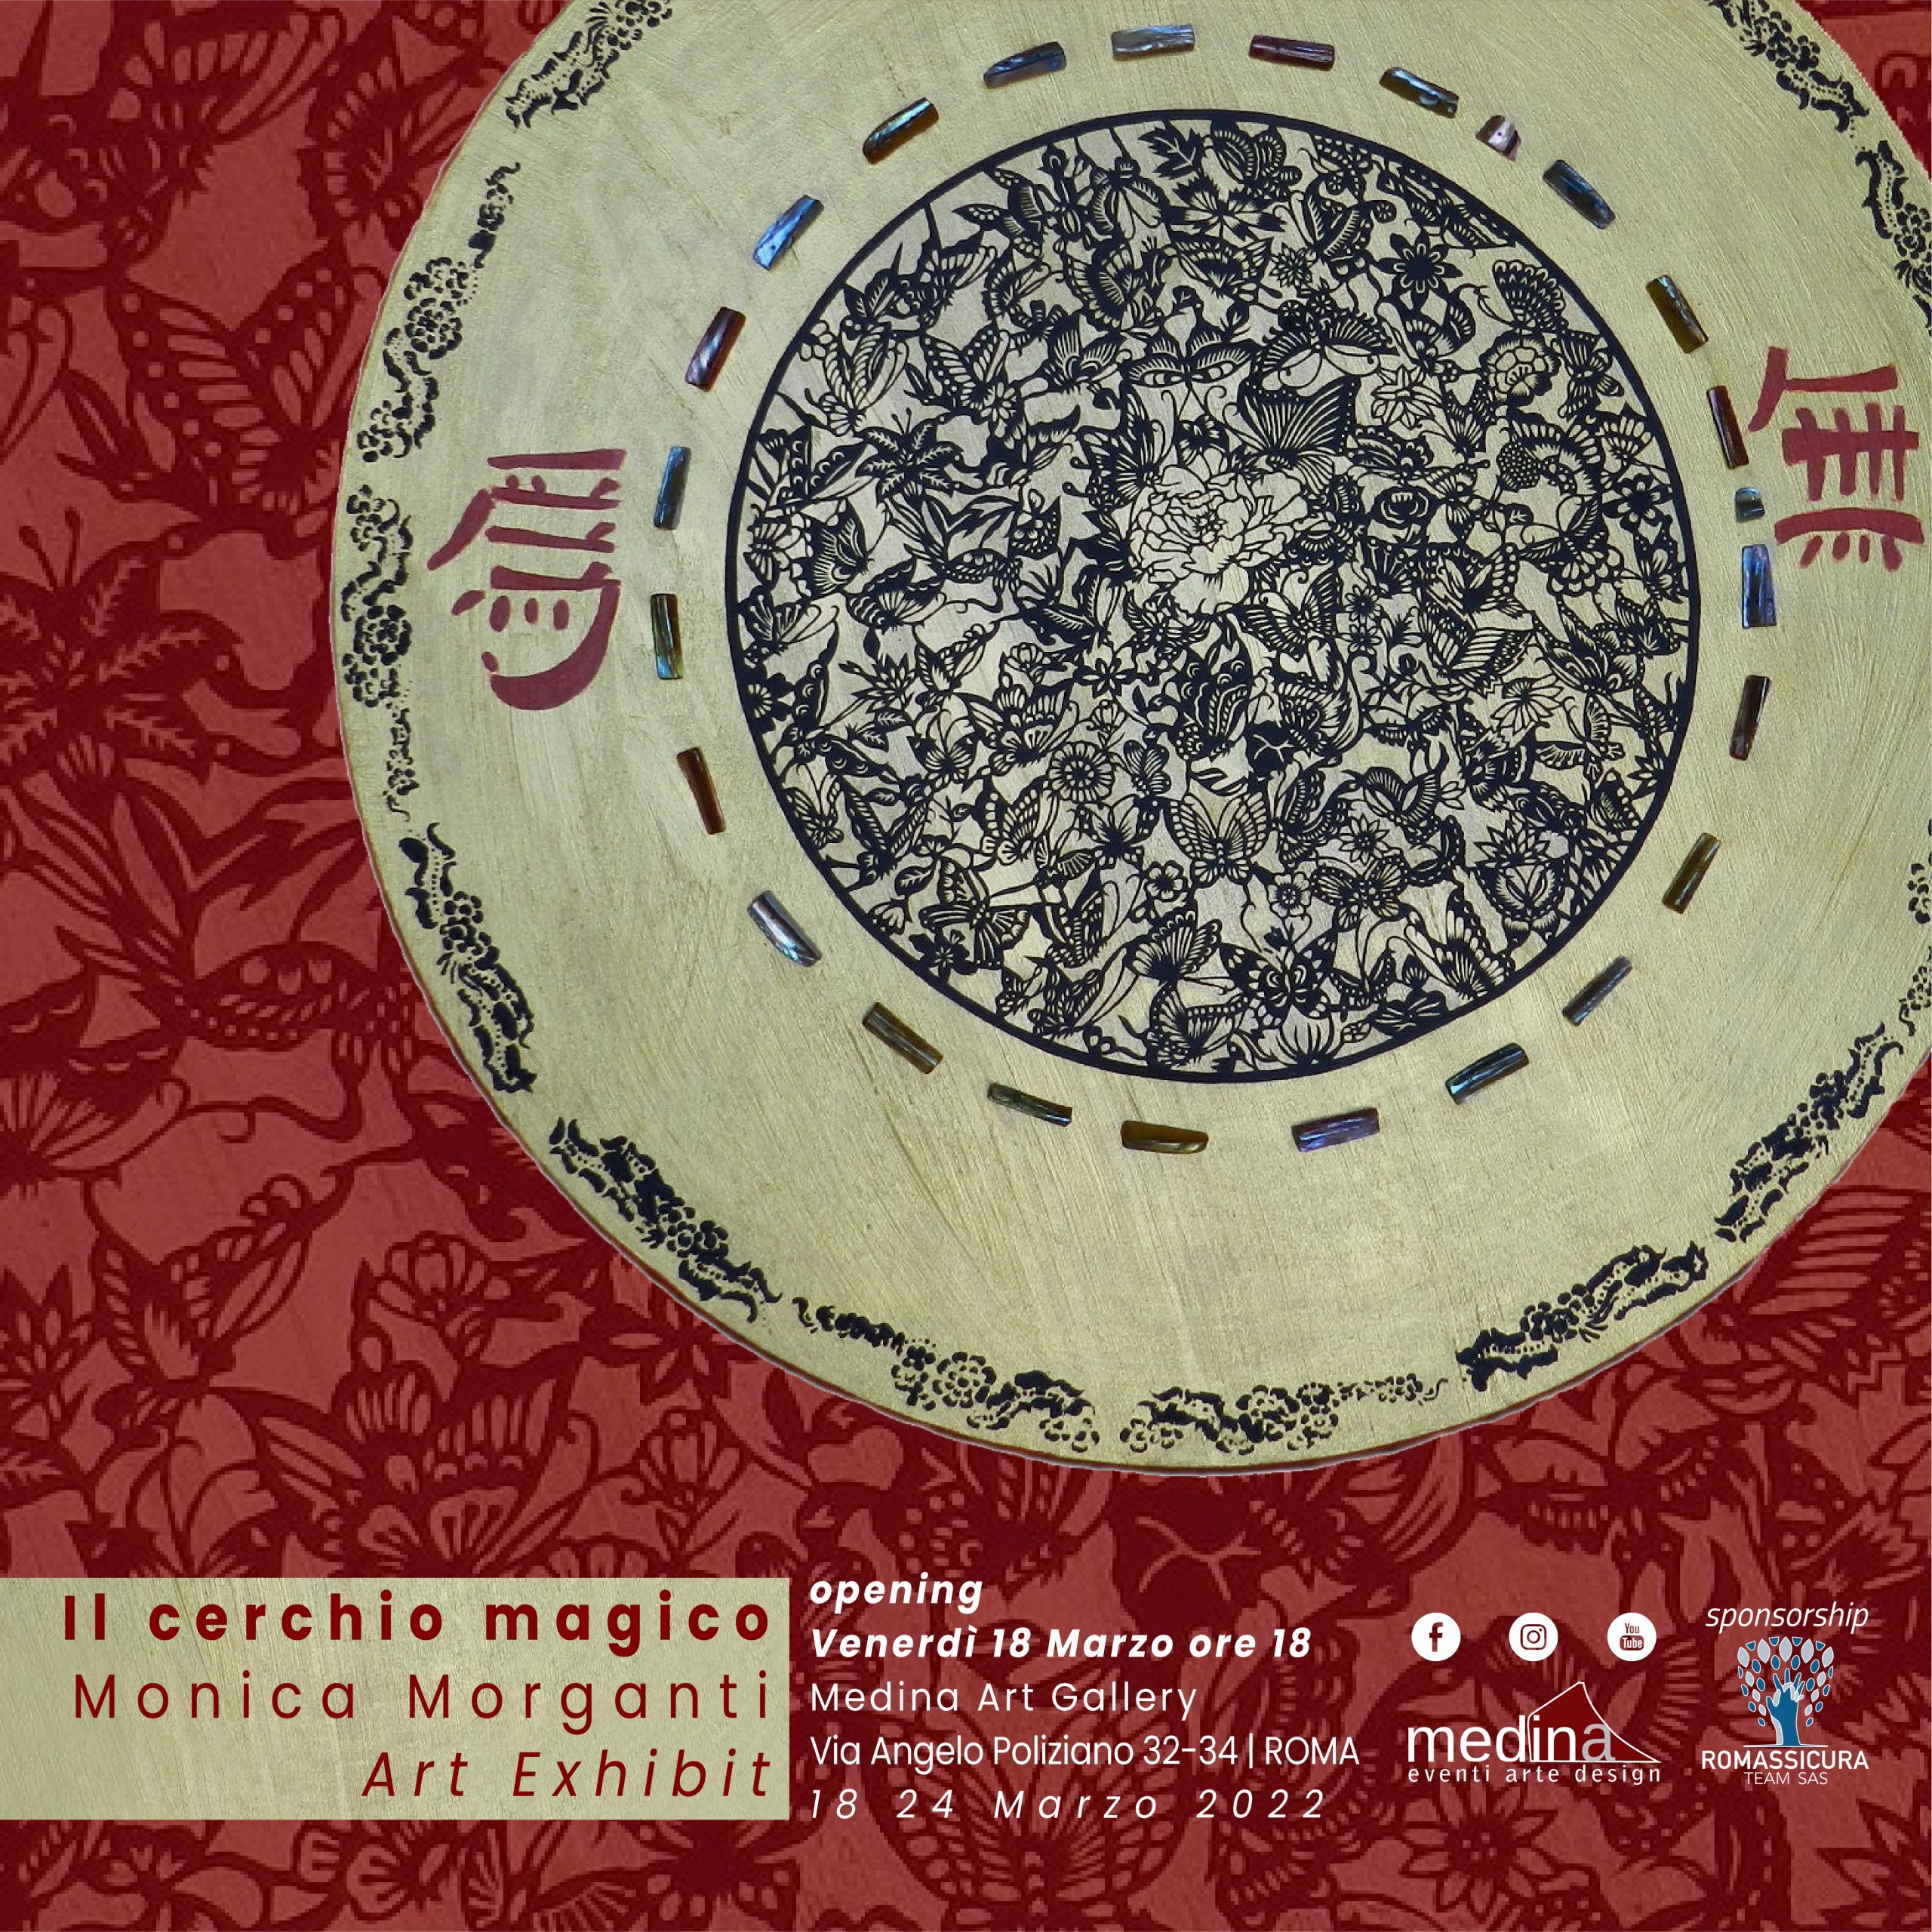 Il cerchio magico art exhibition di Monica Morganti FB Event A 1080x1080